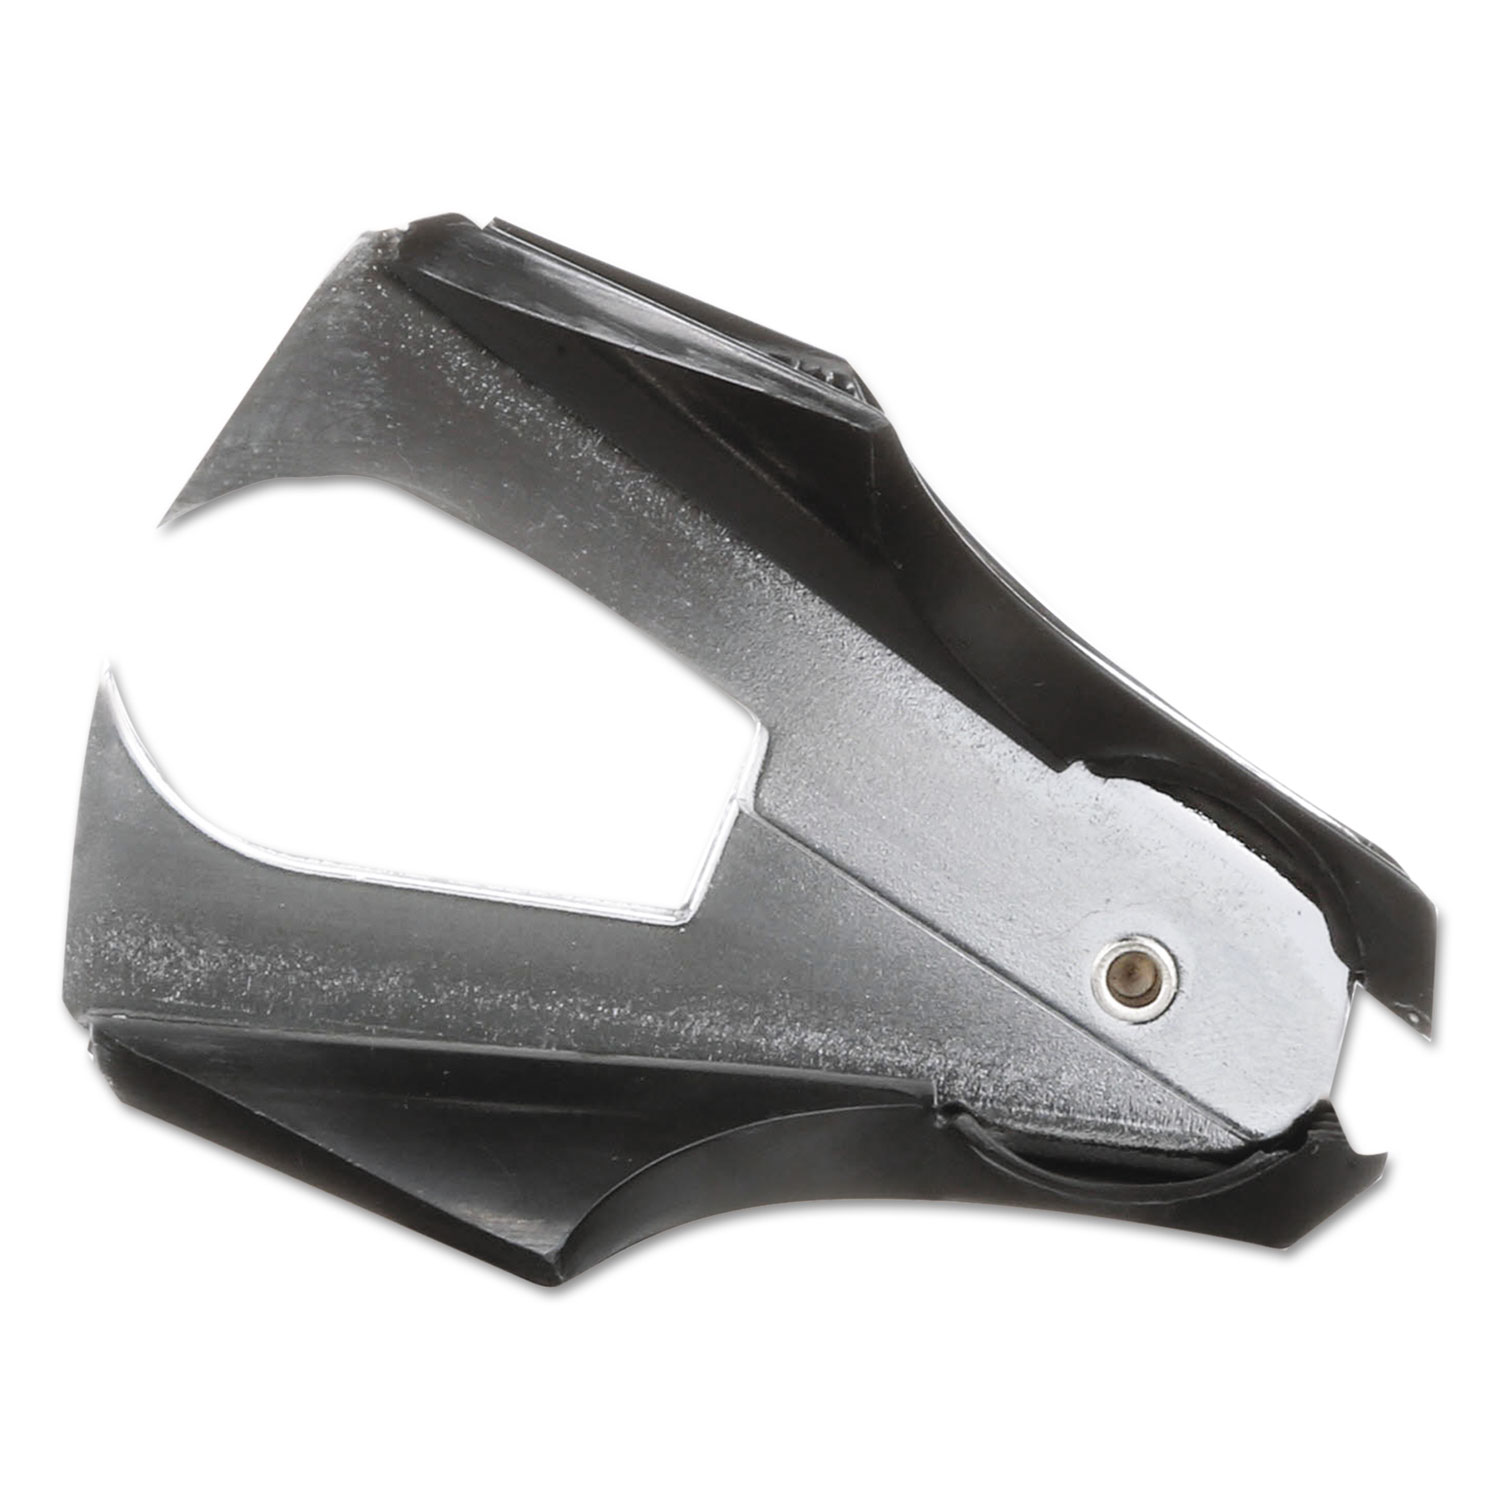 Fiskars Scissors - 8 Overall Length - Stainless Steel - Black - 2